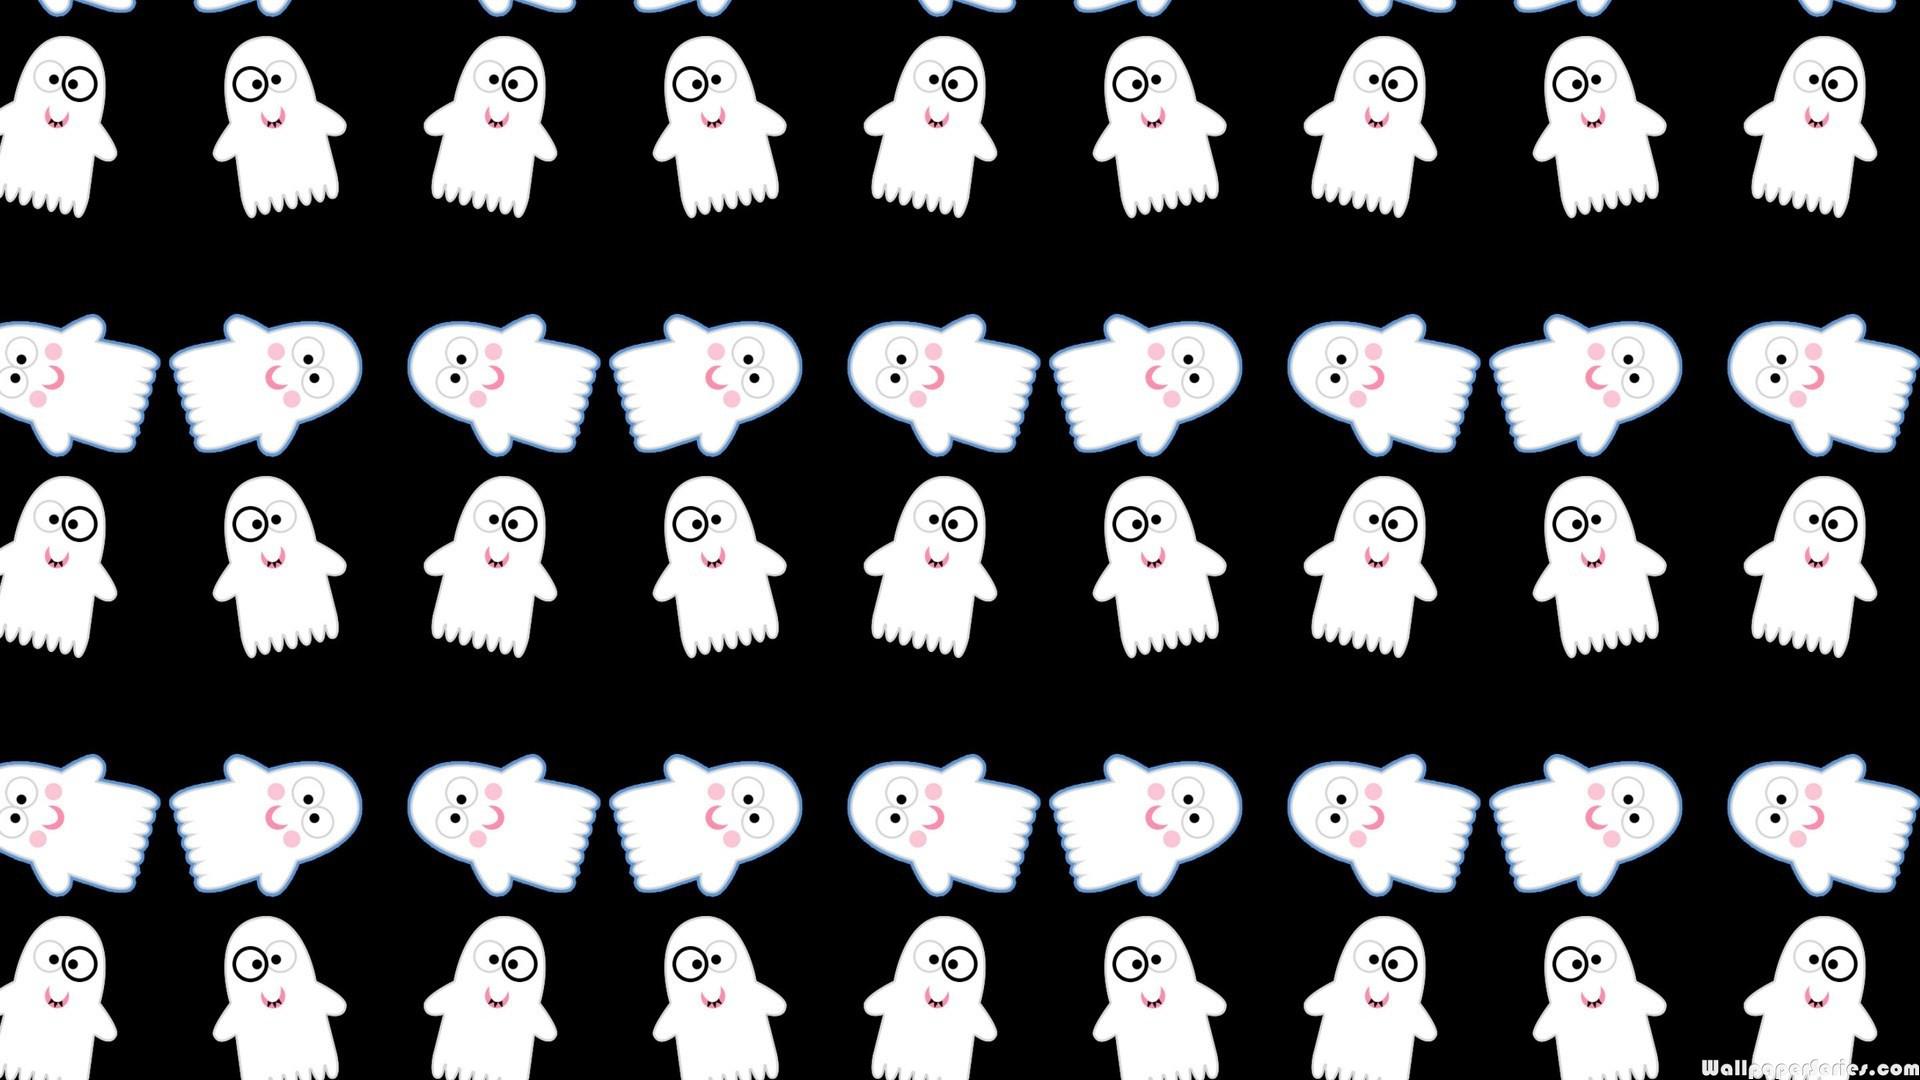 Hd Cute Funny Ghost Pattern Wallpaper - Halloween Wallpaper Ghosts -  1920x1080 Wallpaper 